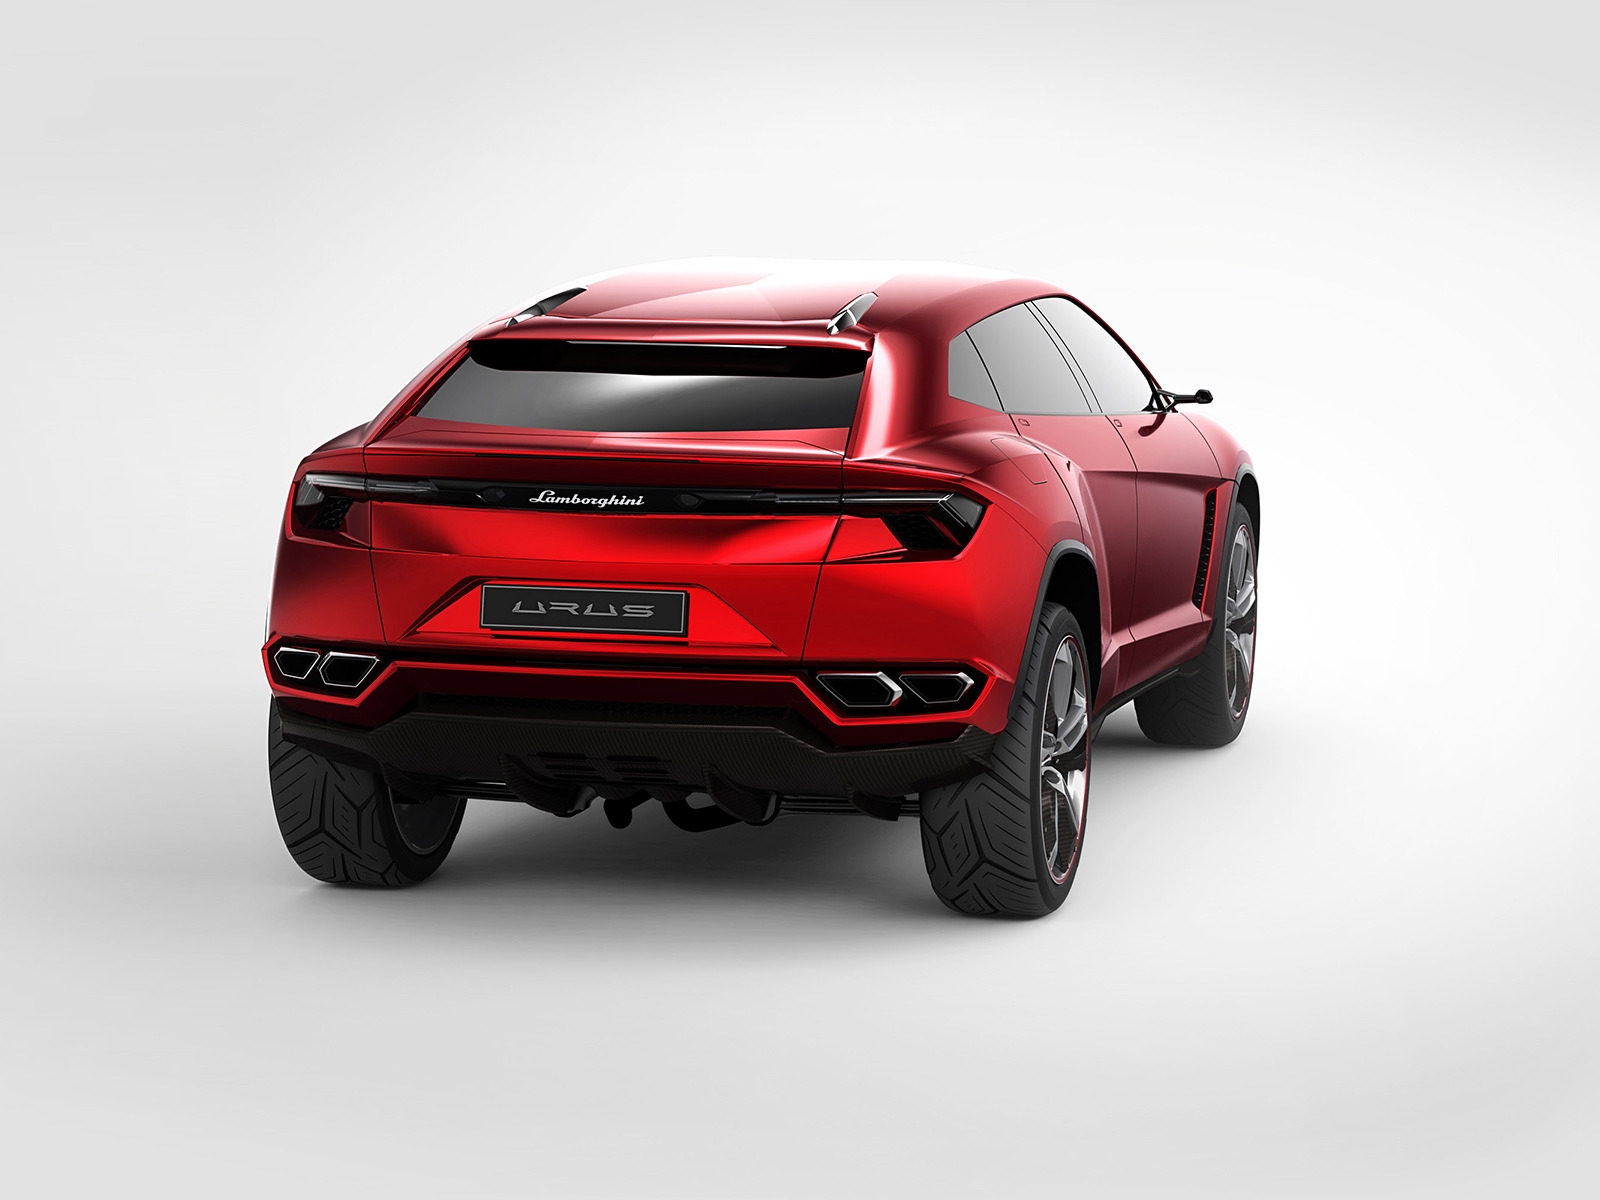 Lamborghini Urus Concept Rear Studio for 1600 x 1200 resolution